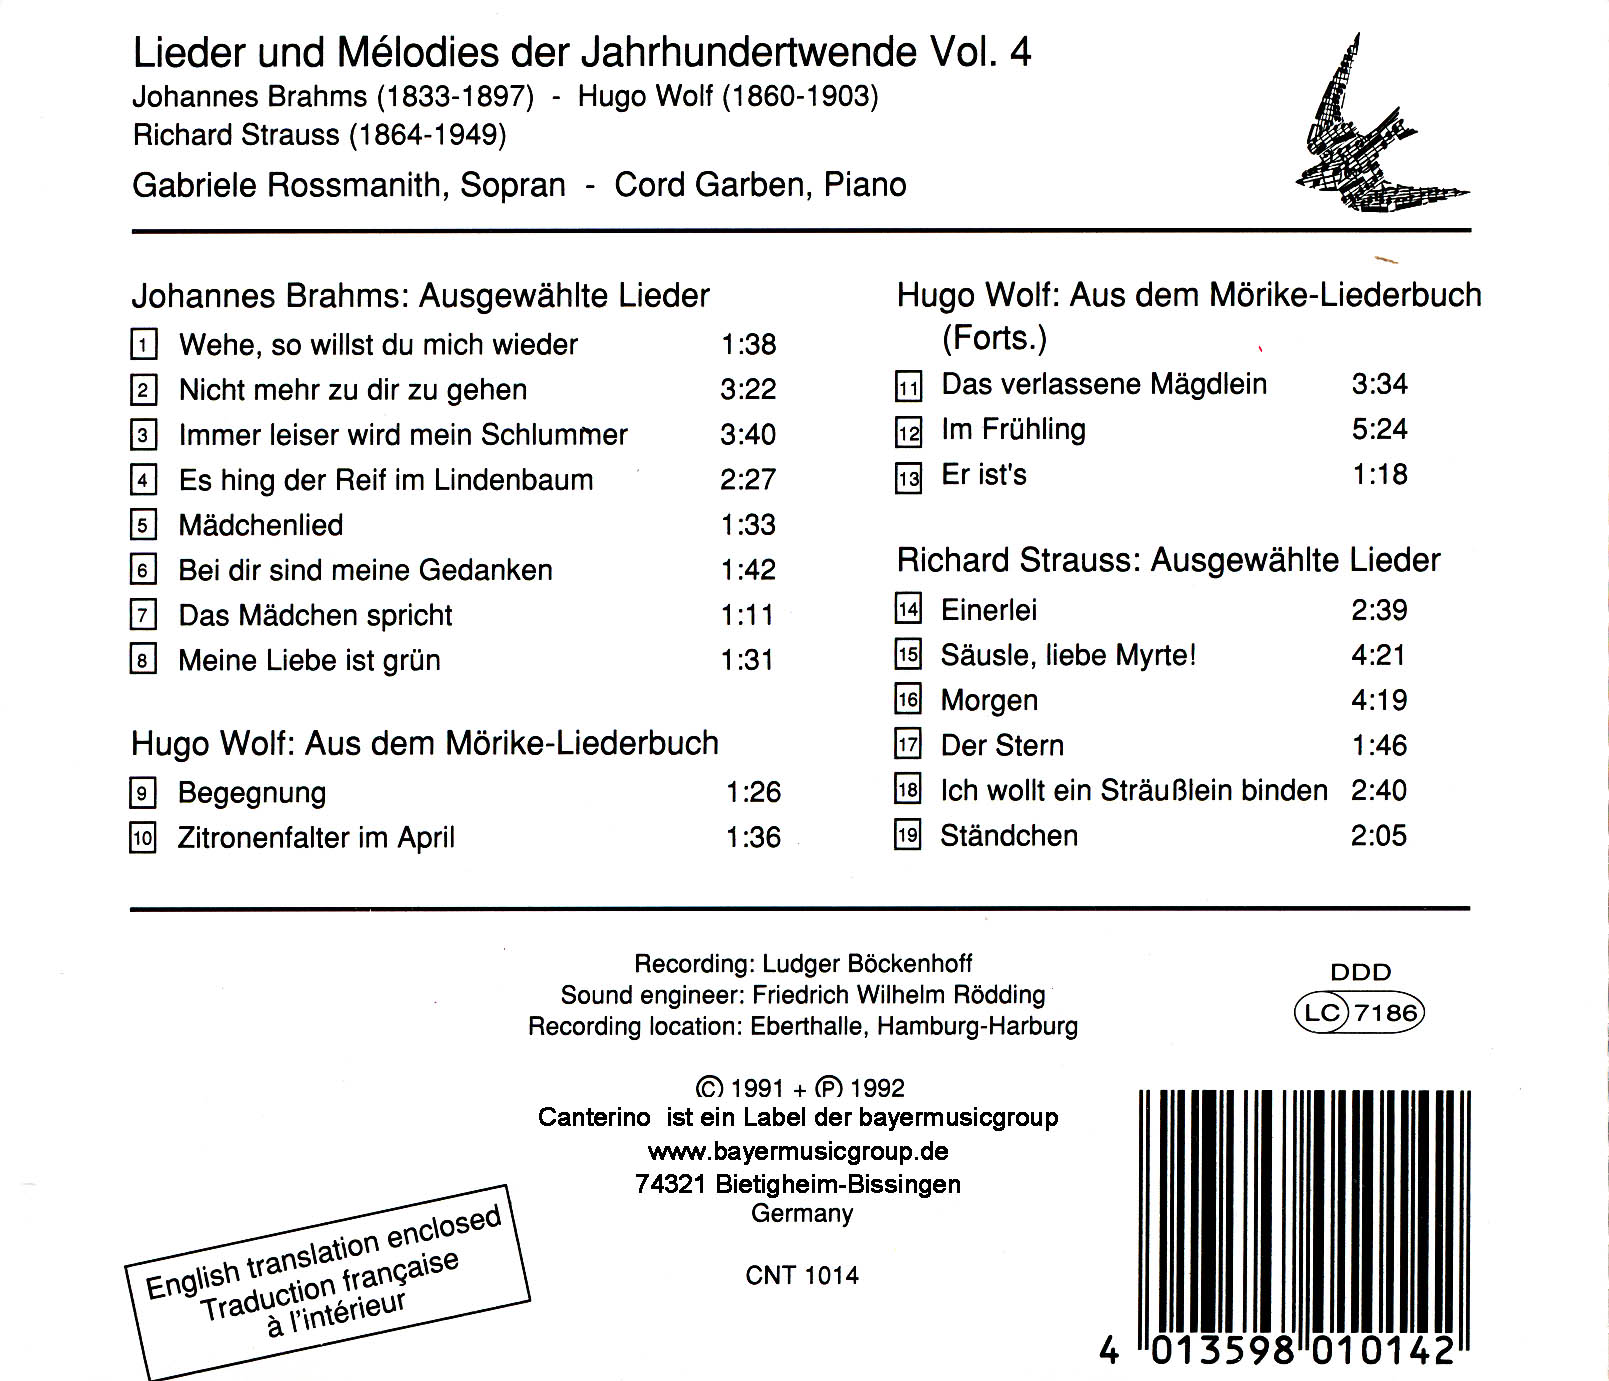 Lieder und Mélodies der Jahrhundertwende Vol. 4